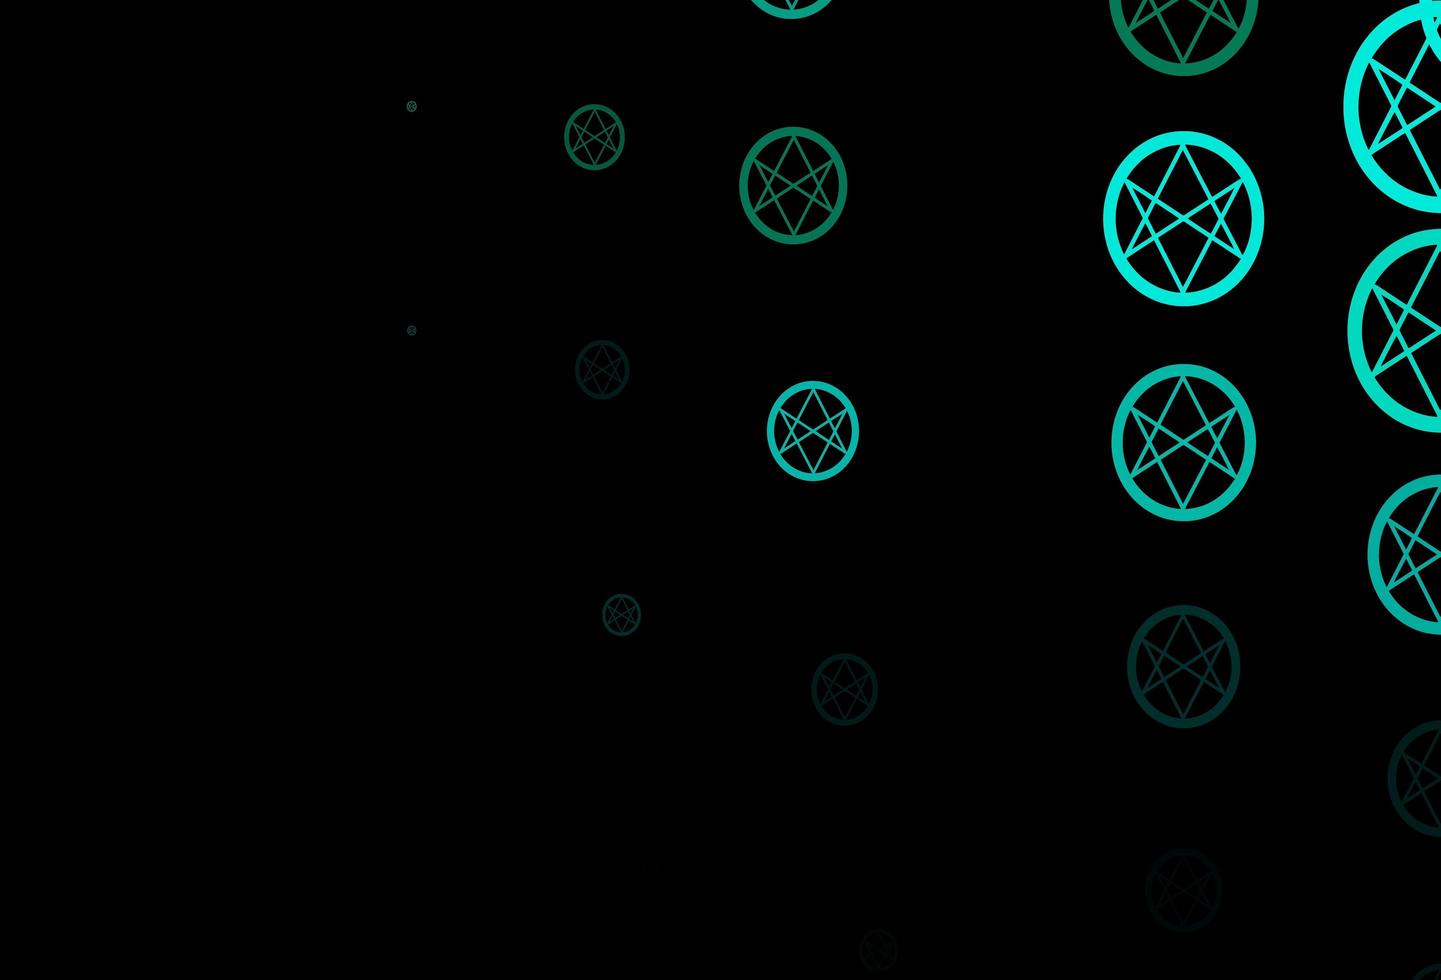 dunkelblaue, grüne Vektorschablone mit esoterischen Zeichen. vektor